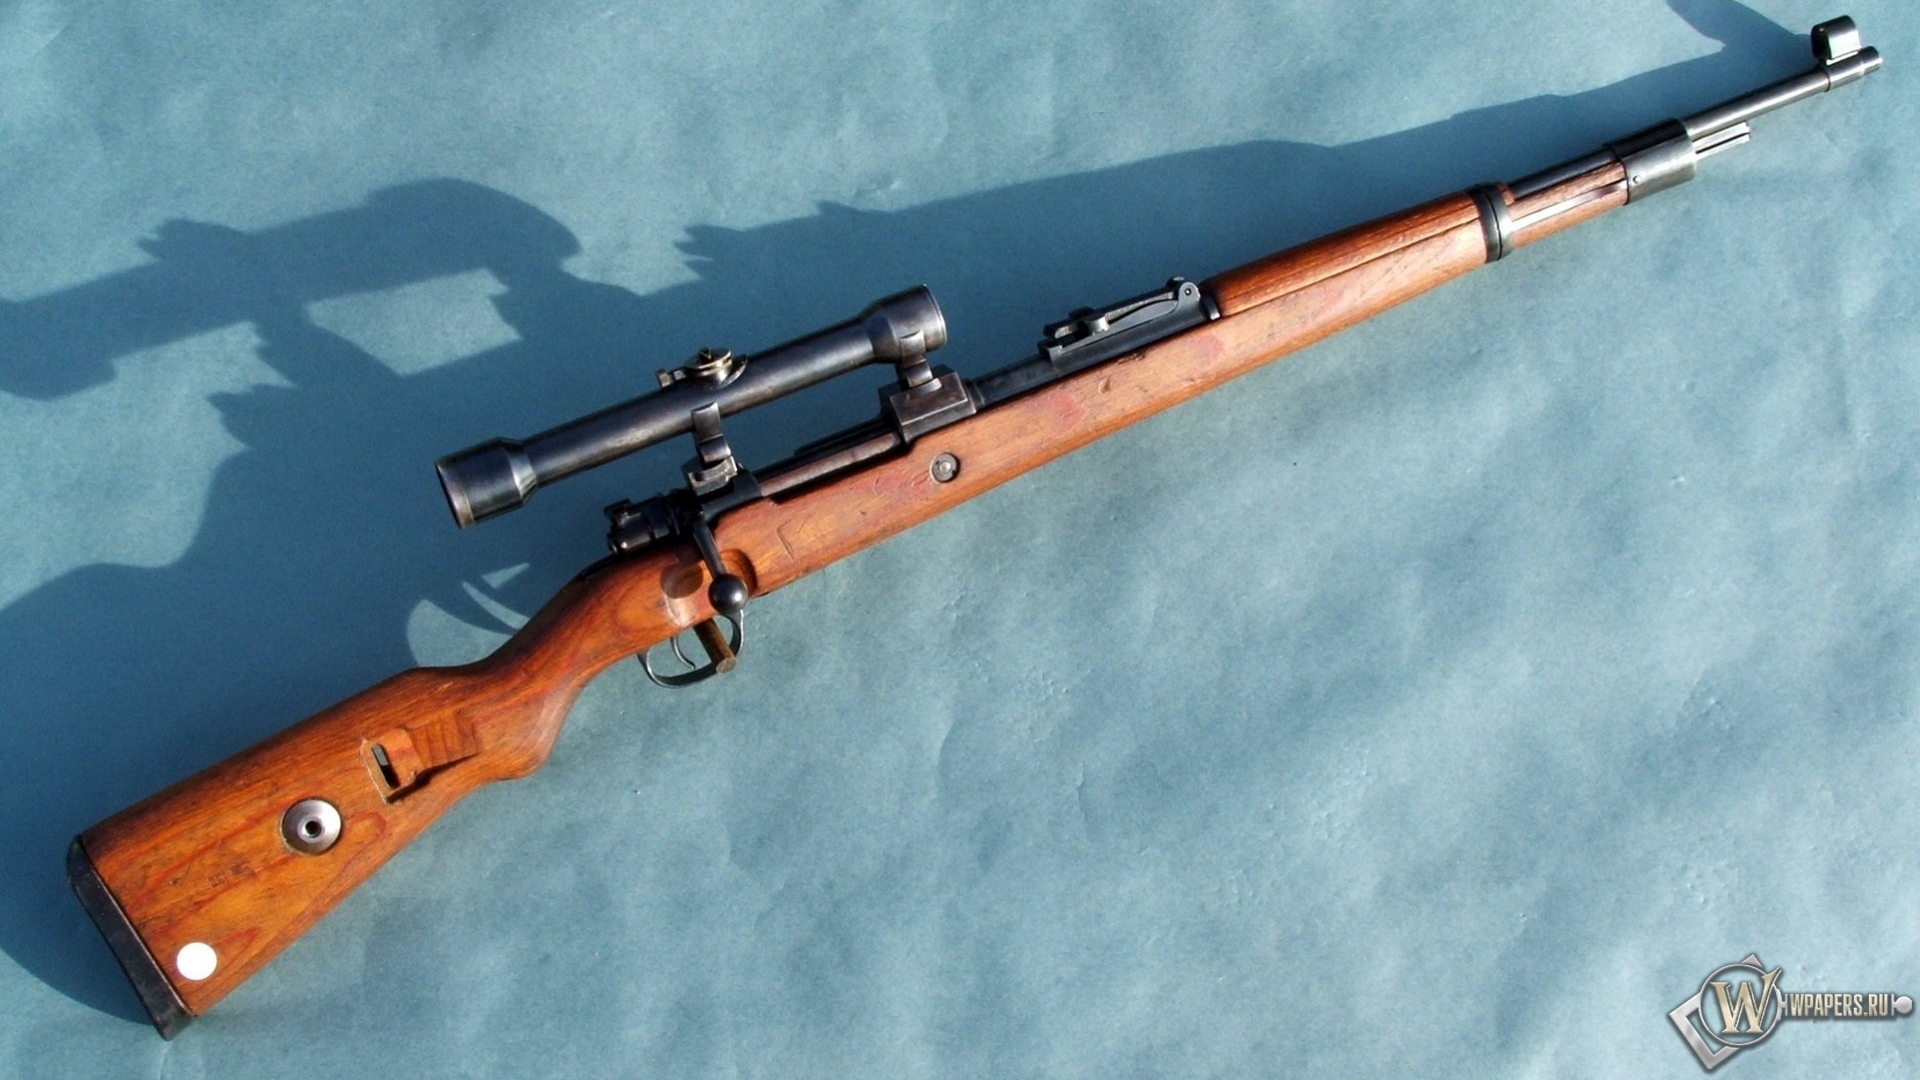 Mauser Gewehr Kar-98 1920x1080